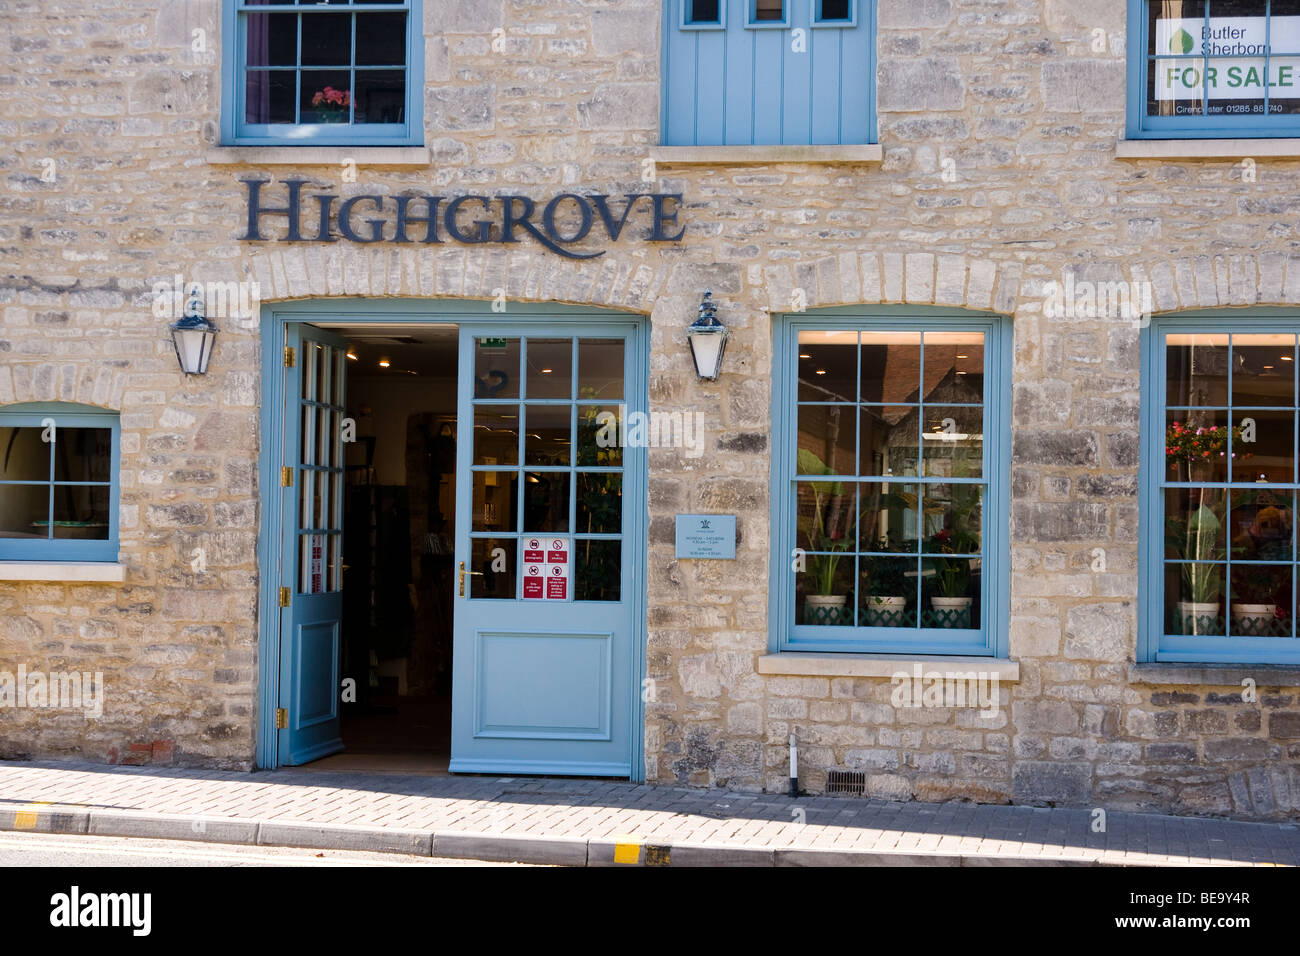 HighGrove shop Tetbury Gloucestershire England UK Stock Photo